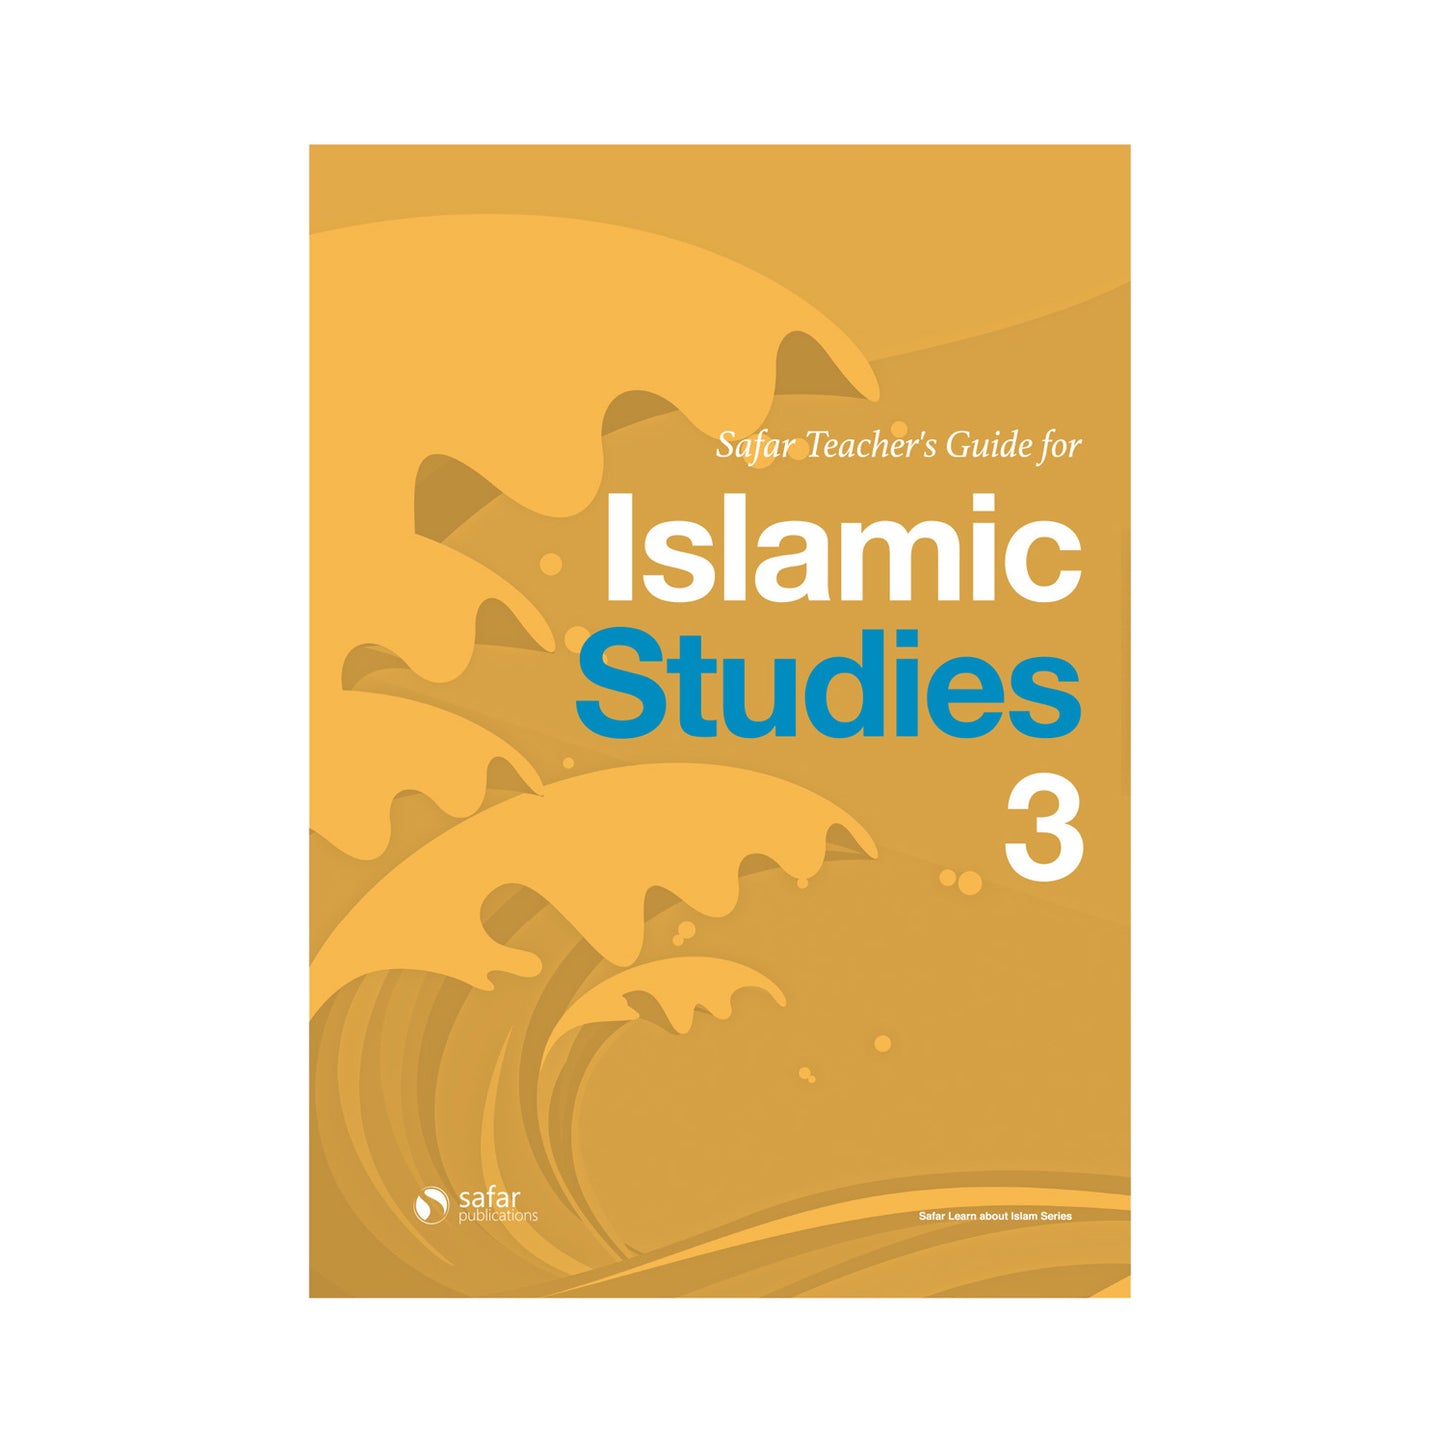 Safar Teacher’s Guide for Islamic Studies – Book 3